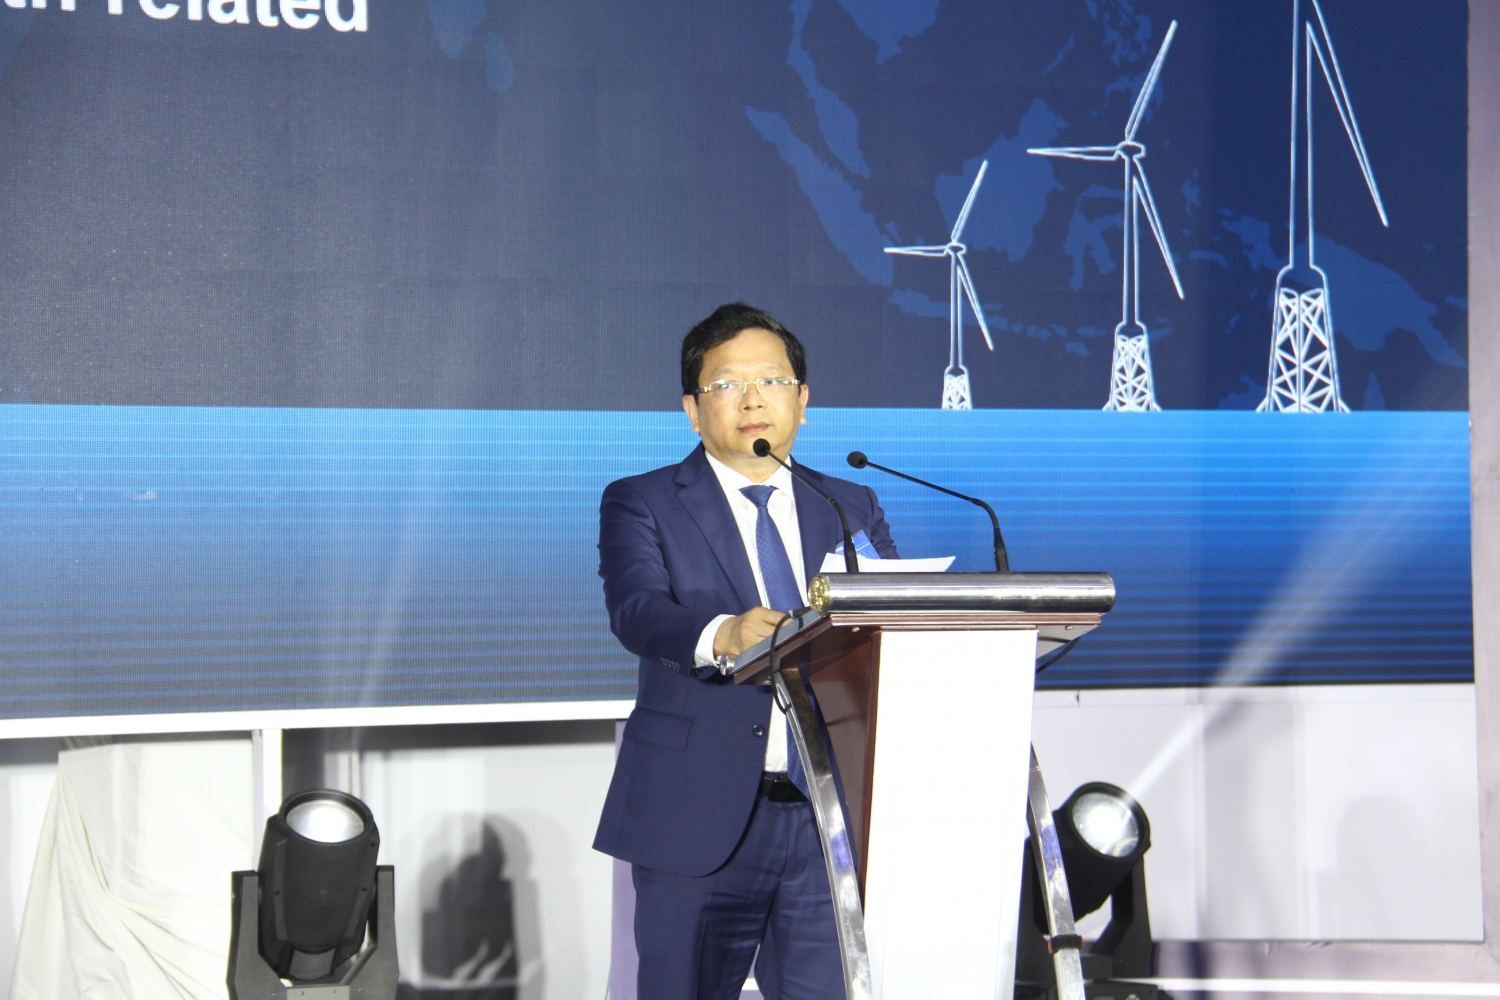 PTSC ký hợp đồng chế tạo và cung cấp chân đế điện gió ngoài khơi cho Đài Loan (Trung Quốc)